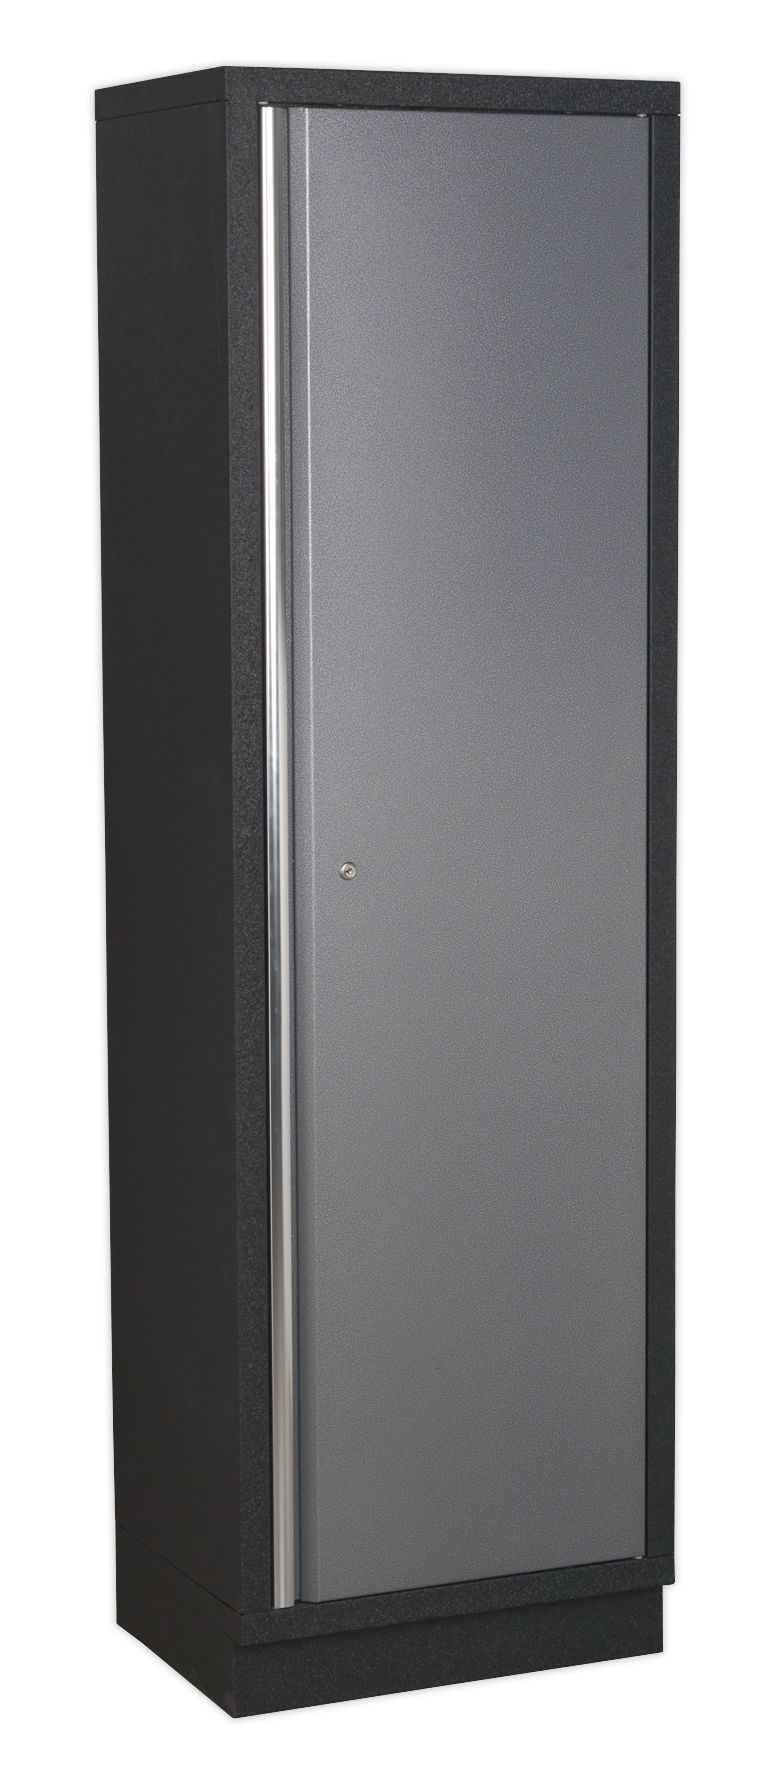 Sealey 5 Cabinet Set APMSSTACK02SS - Superline Pro Range